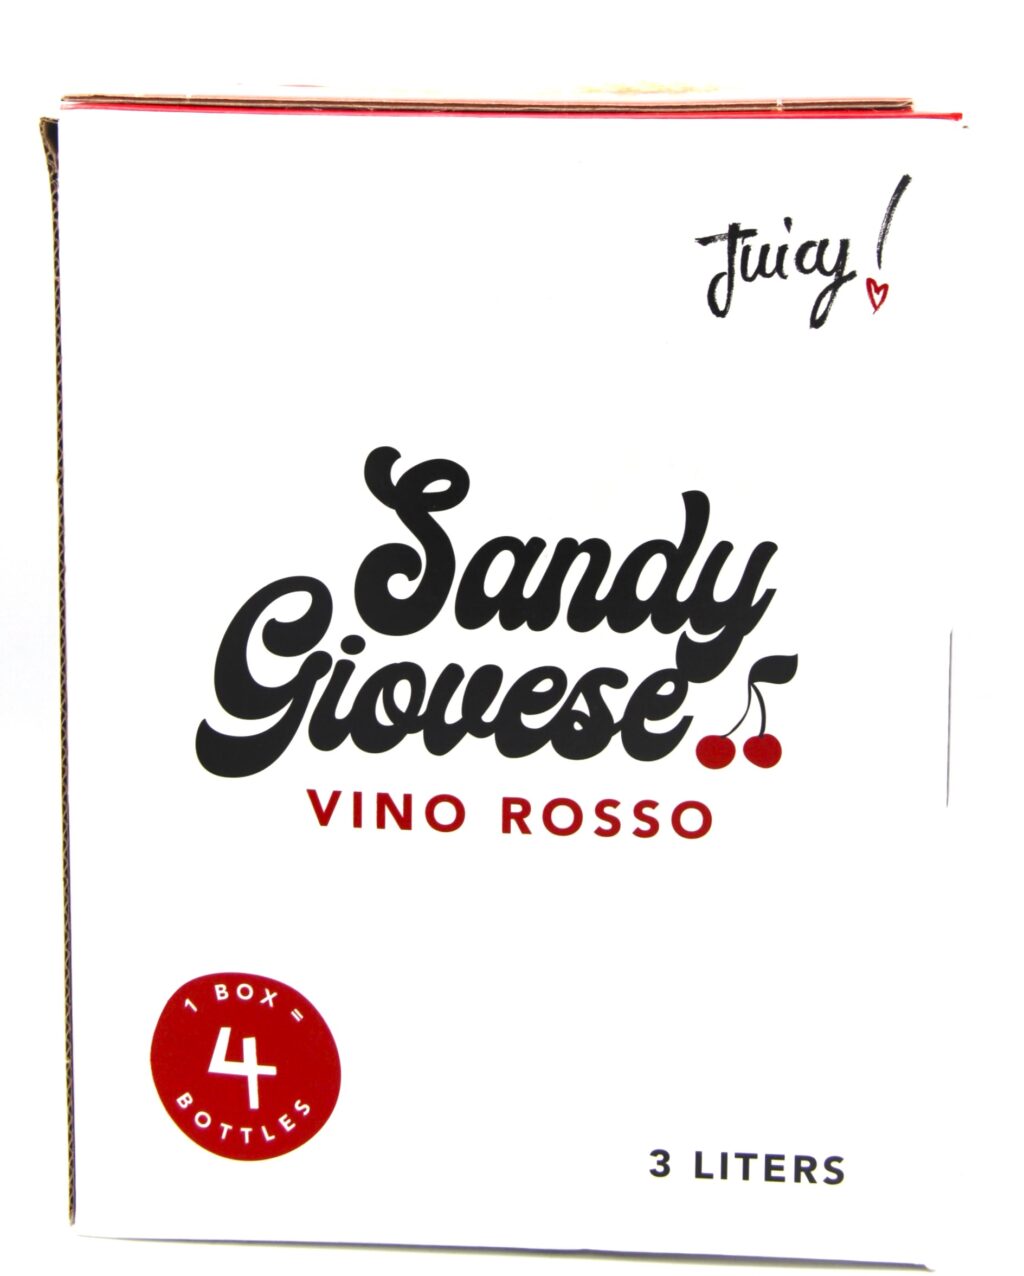 Sandy Giovese Vino Rosso 3 liter Box